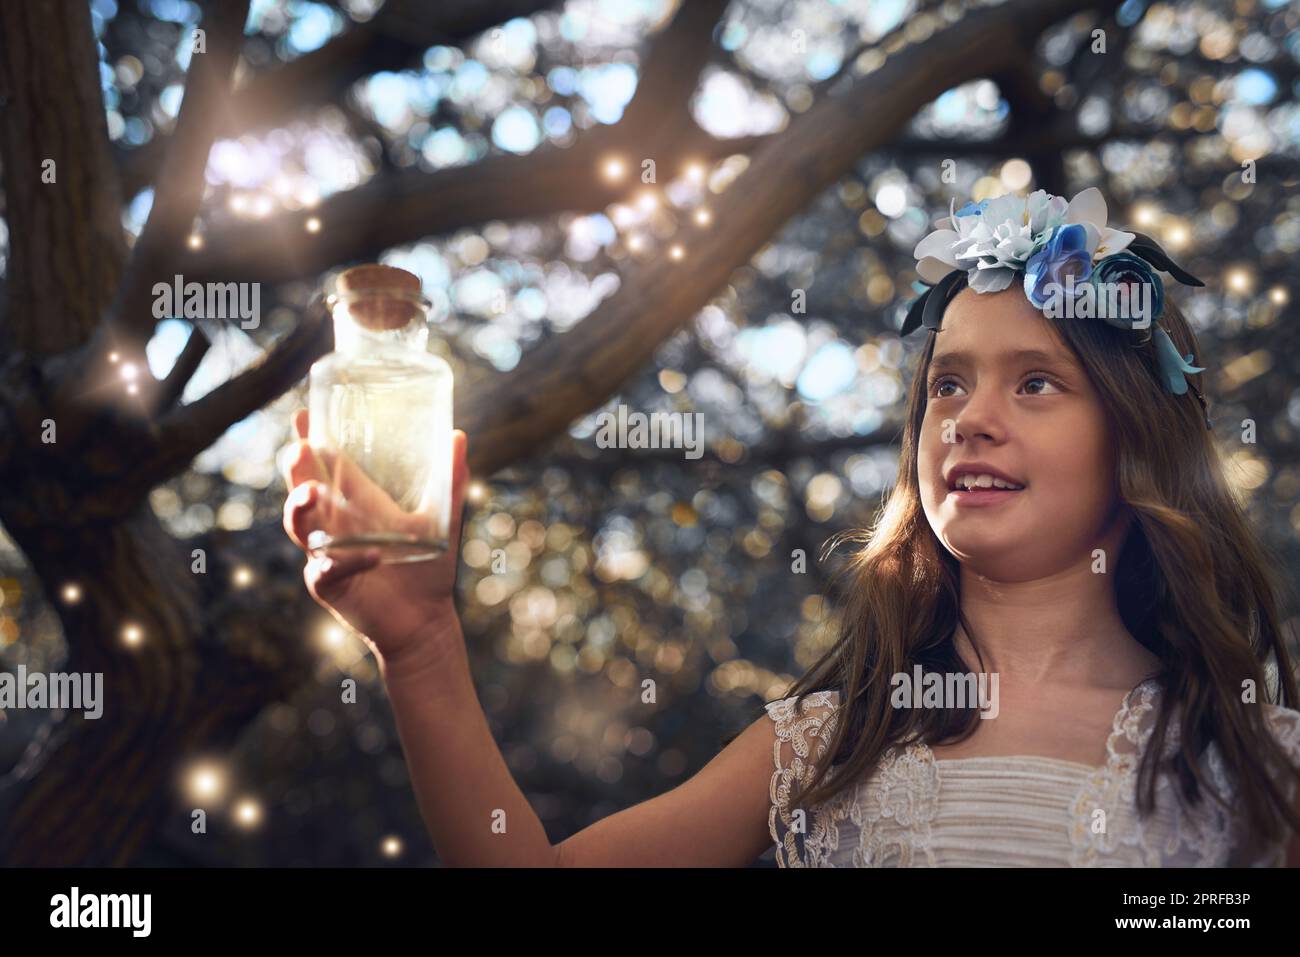 Sie glühen wie Feen. Ein kleines Mädchen, das draußen in einem Glas Glühwürmchen fängt. Stockfoto